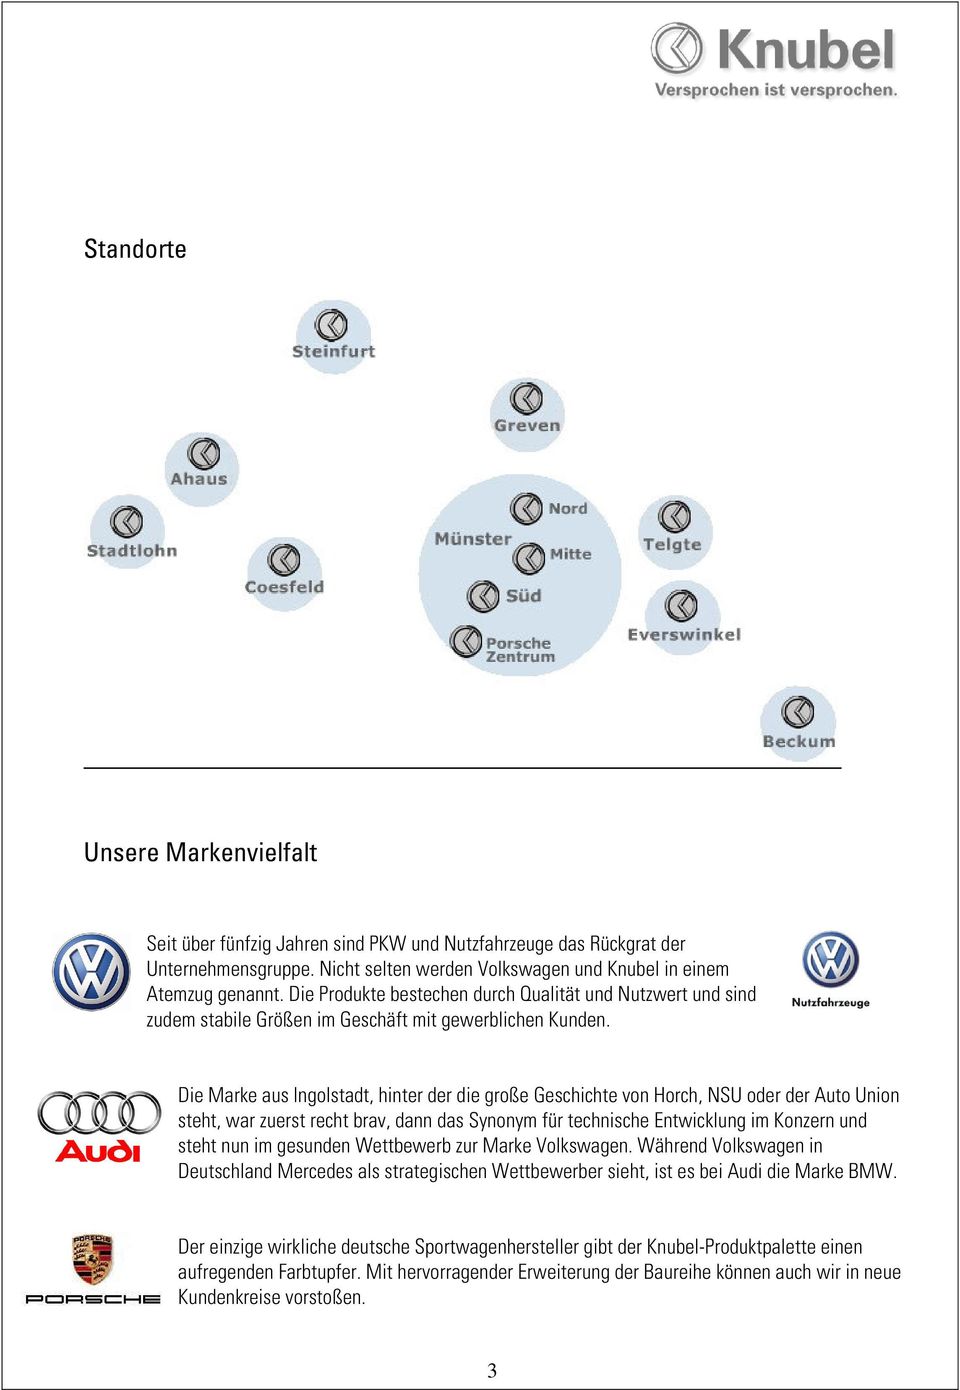 Die Marke aus Ingolstadt, hinter der die große Geschichte von Horch, NSU oder der Auto Union steht, war zuerst recht brav, dann das Synonym für technische Entwicklung im Konzern und steht nun im